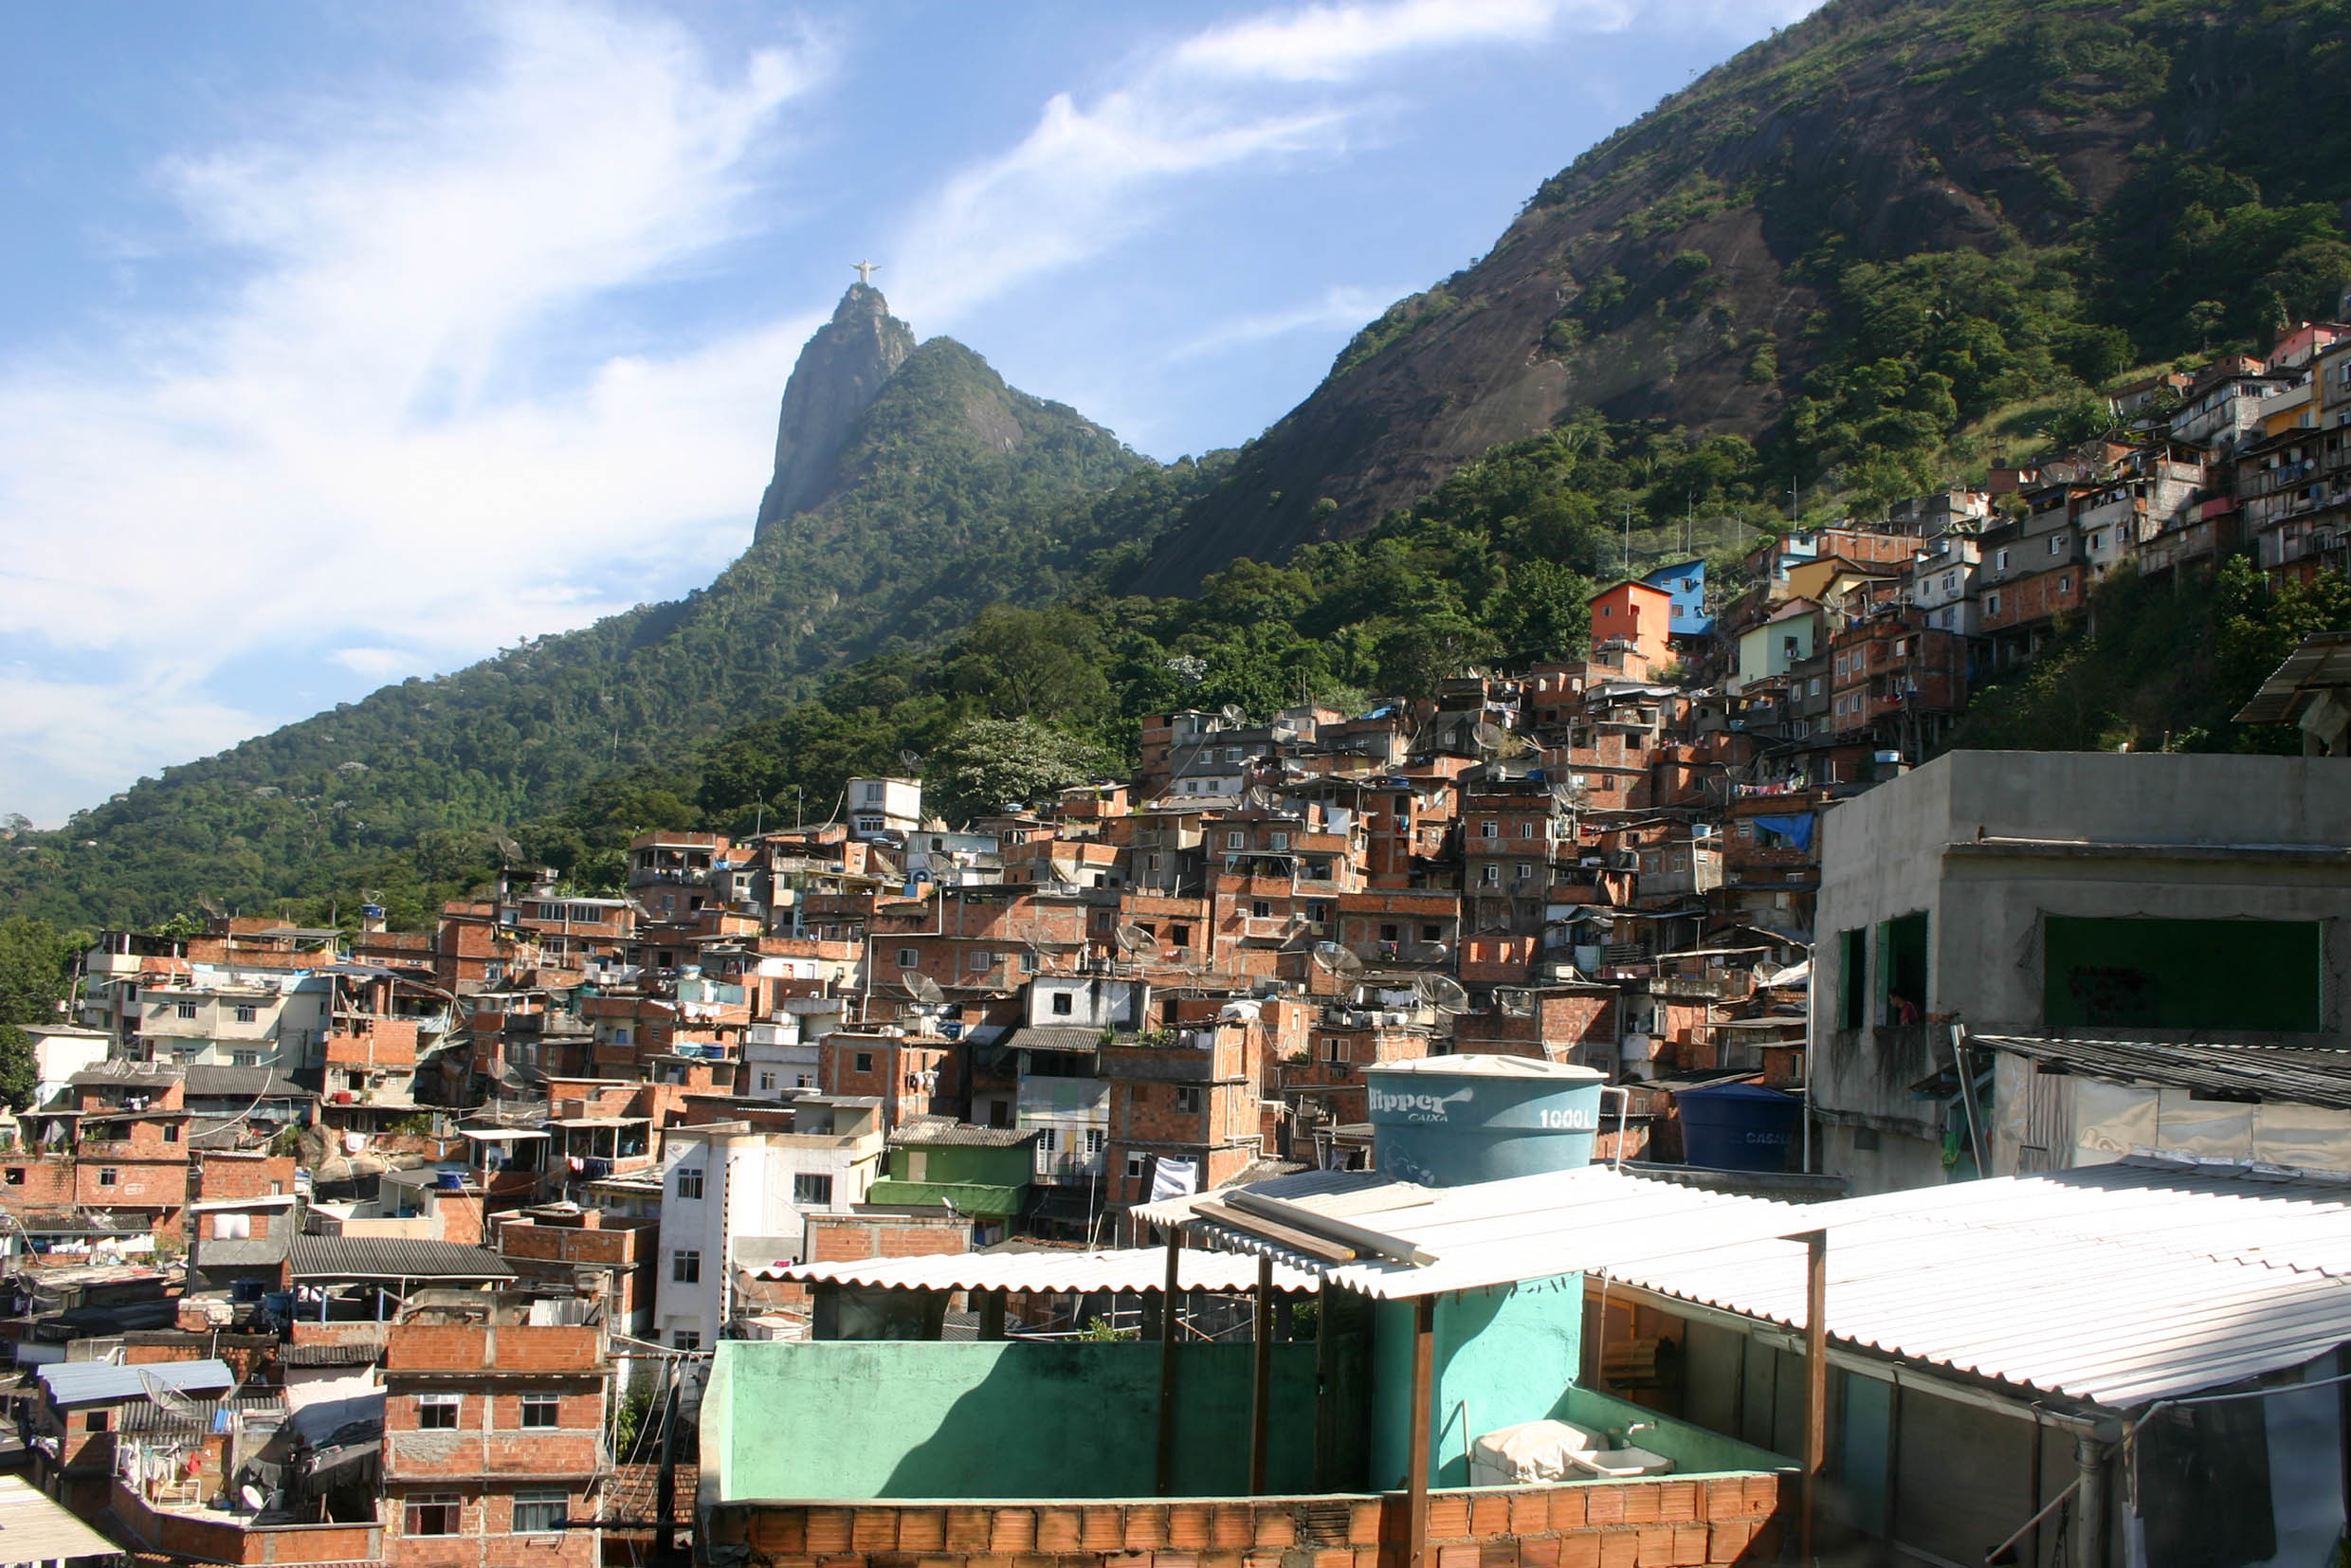 Moradores de favelas movimentam R$ 68,6 bi ao ano